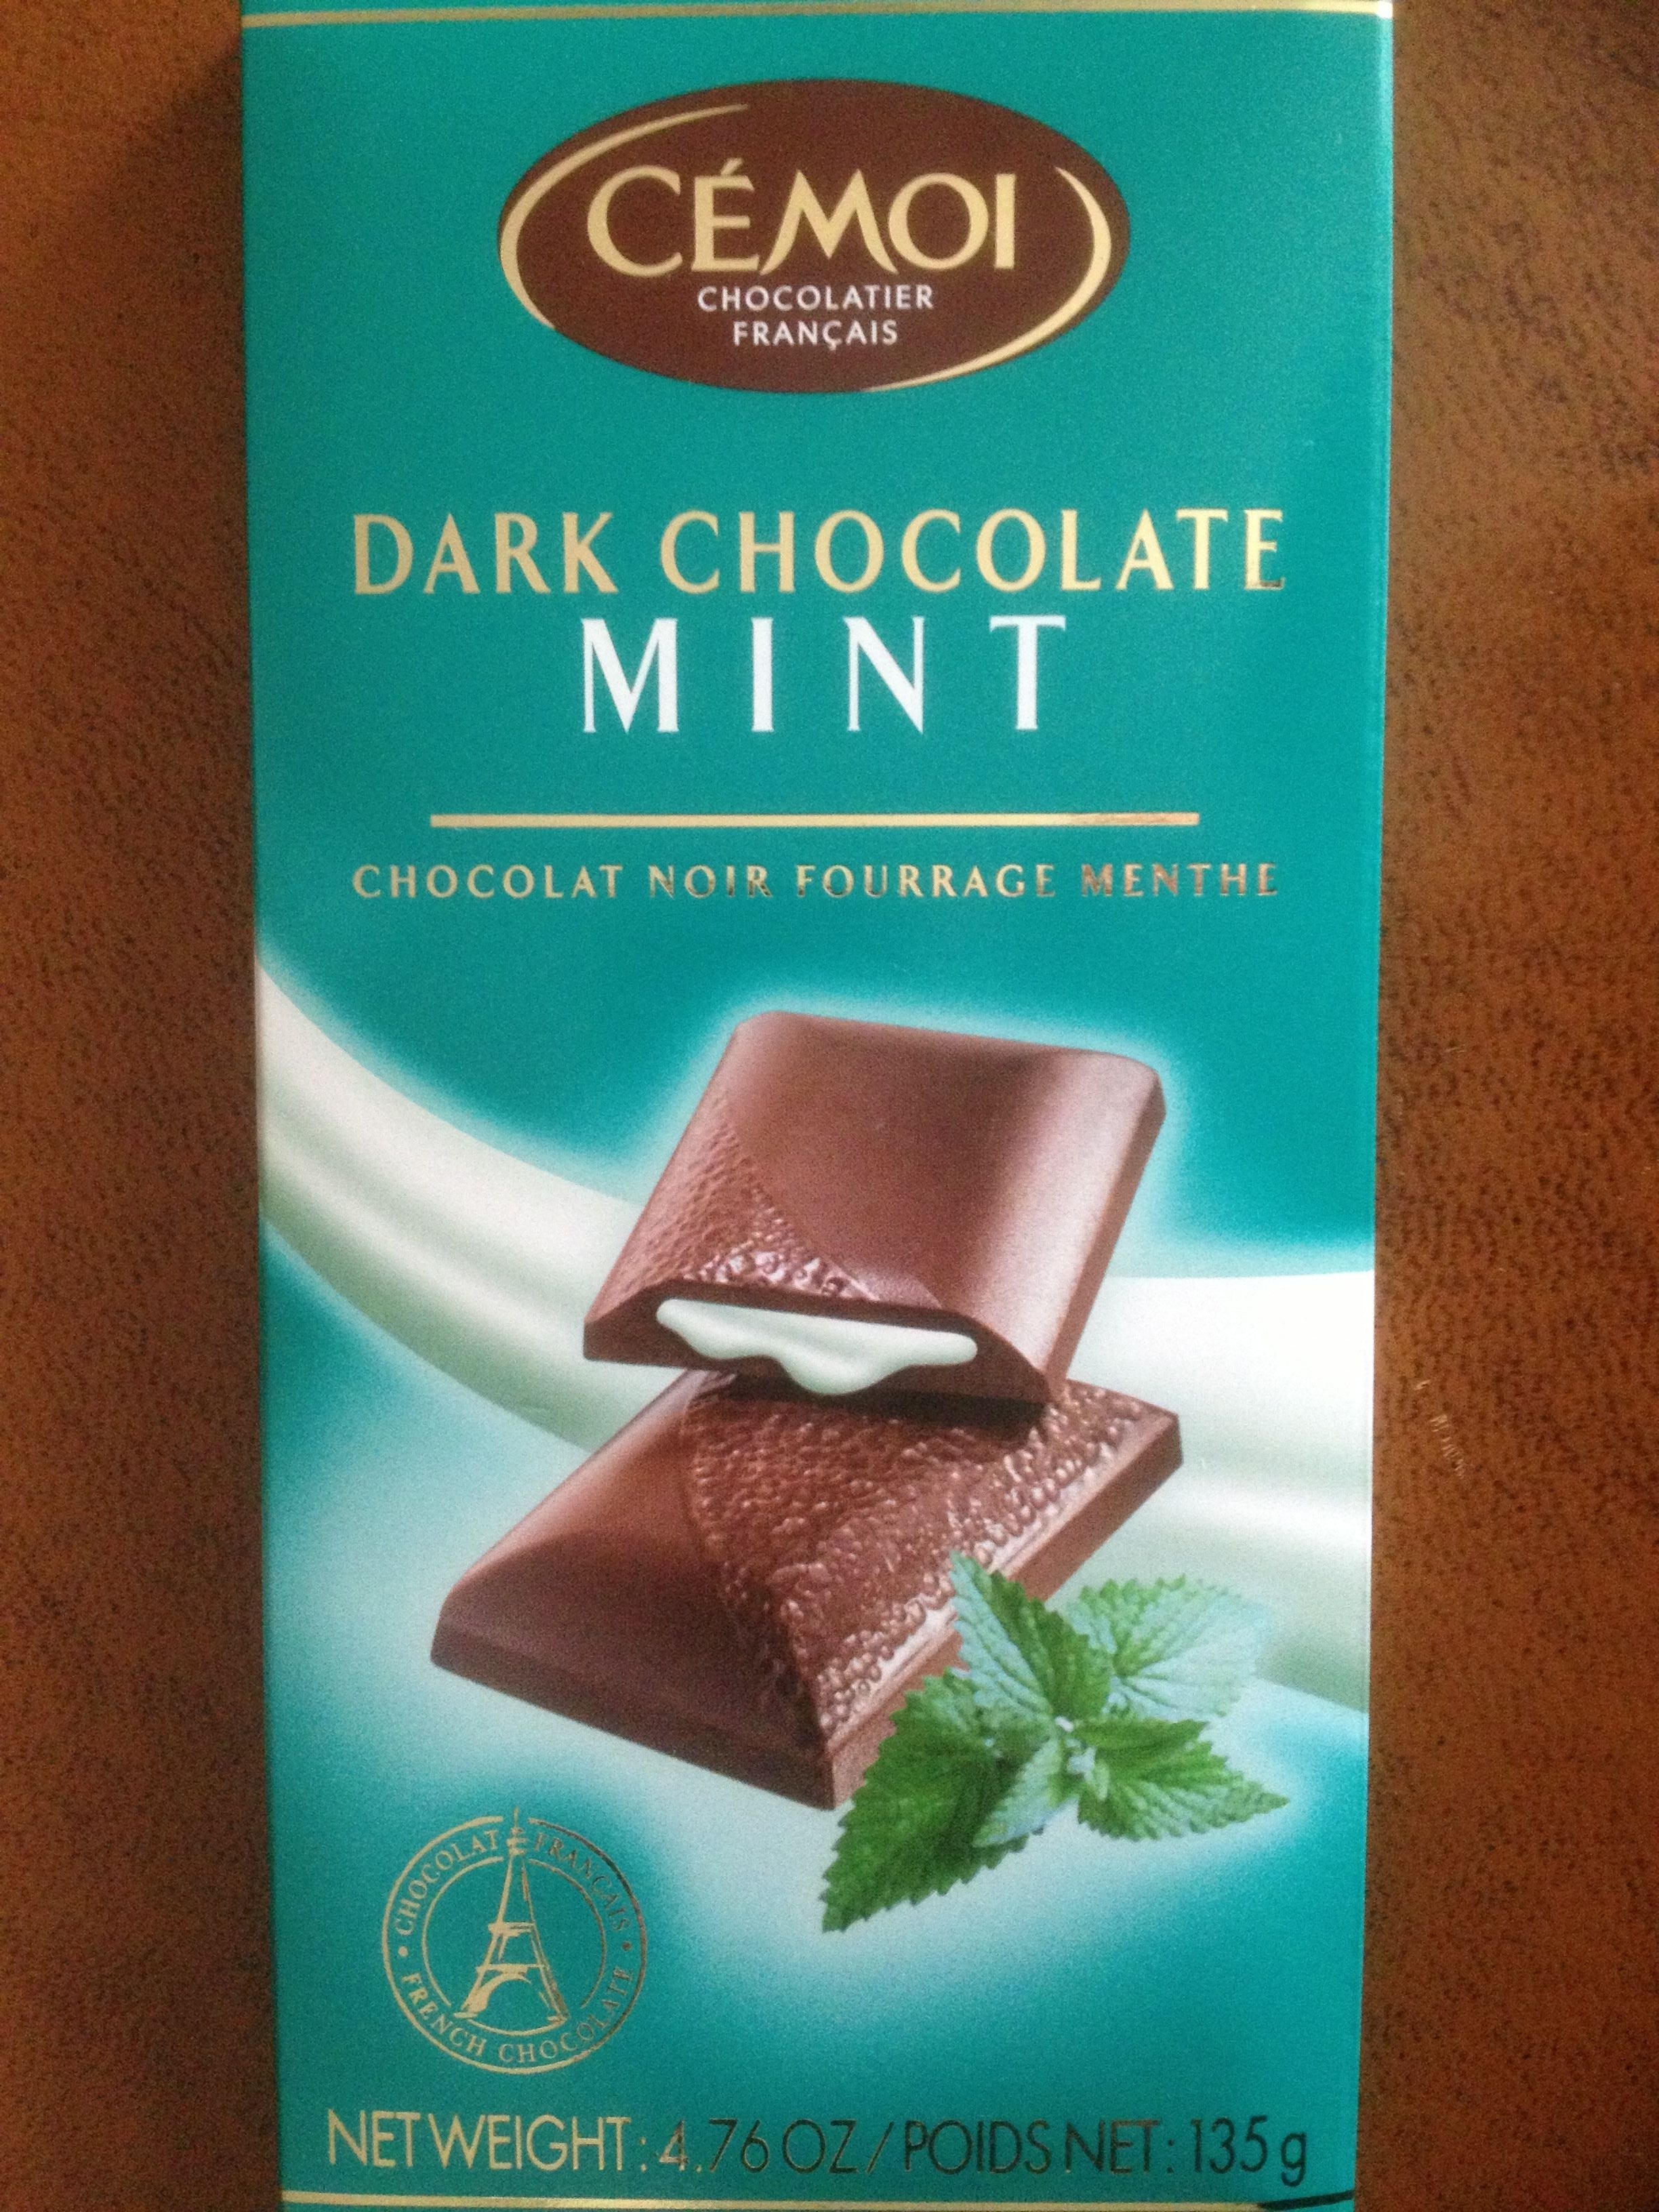 Chocolat noir fourrage menthe - Product - fr